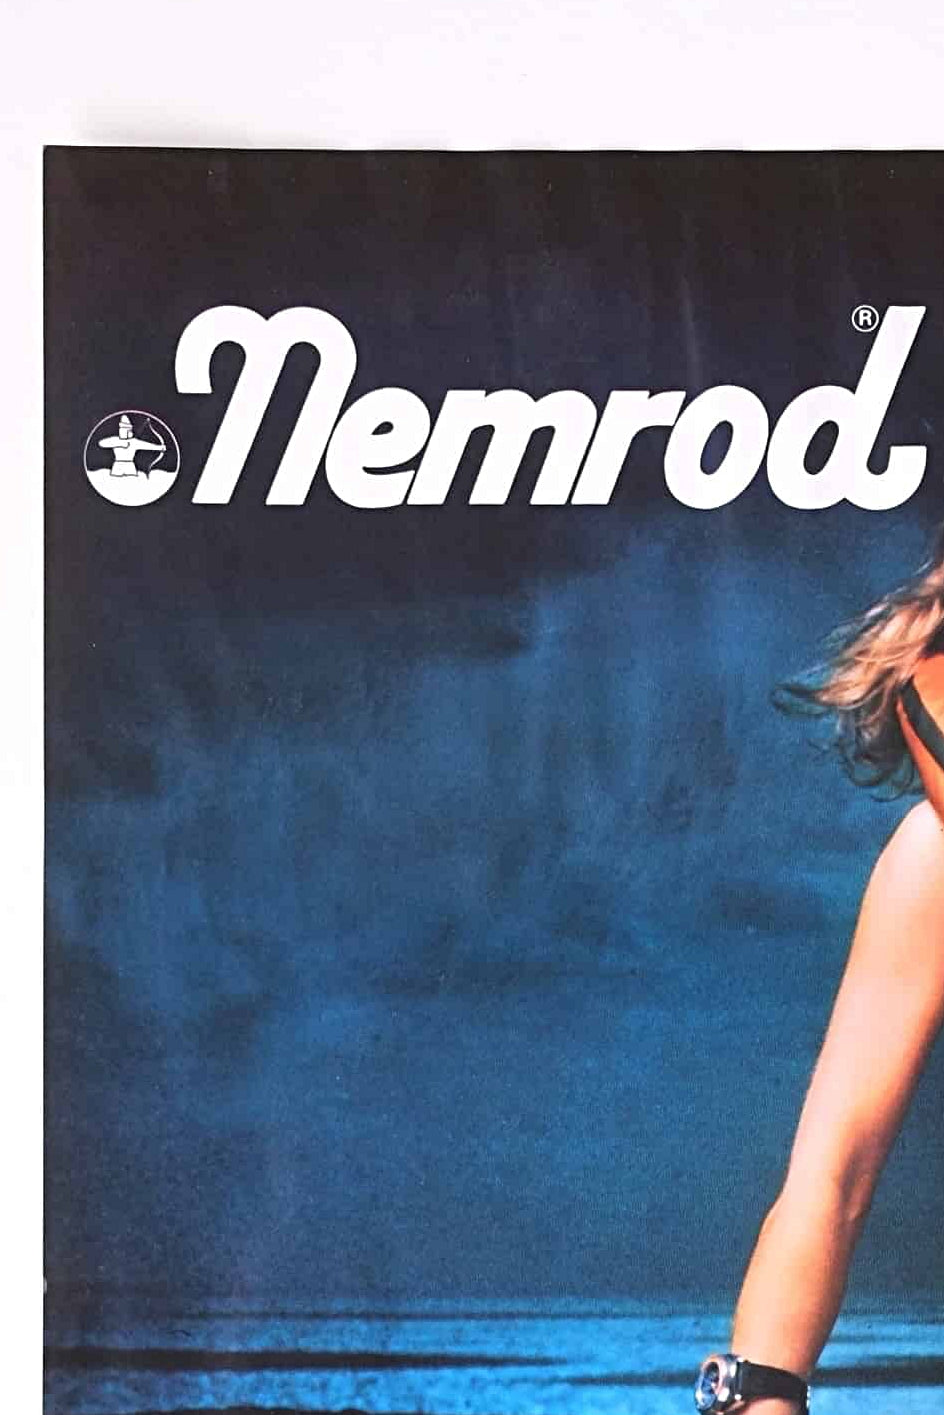 Vintage Nemrod 80's Scuba Diving Poster DETAIL